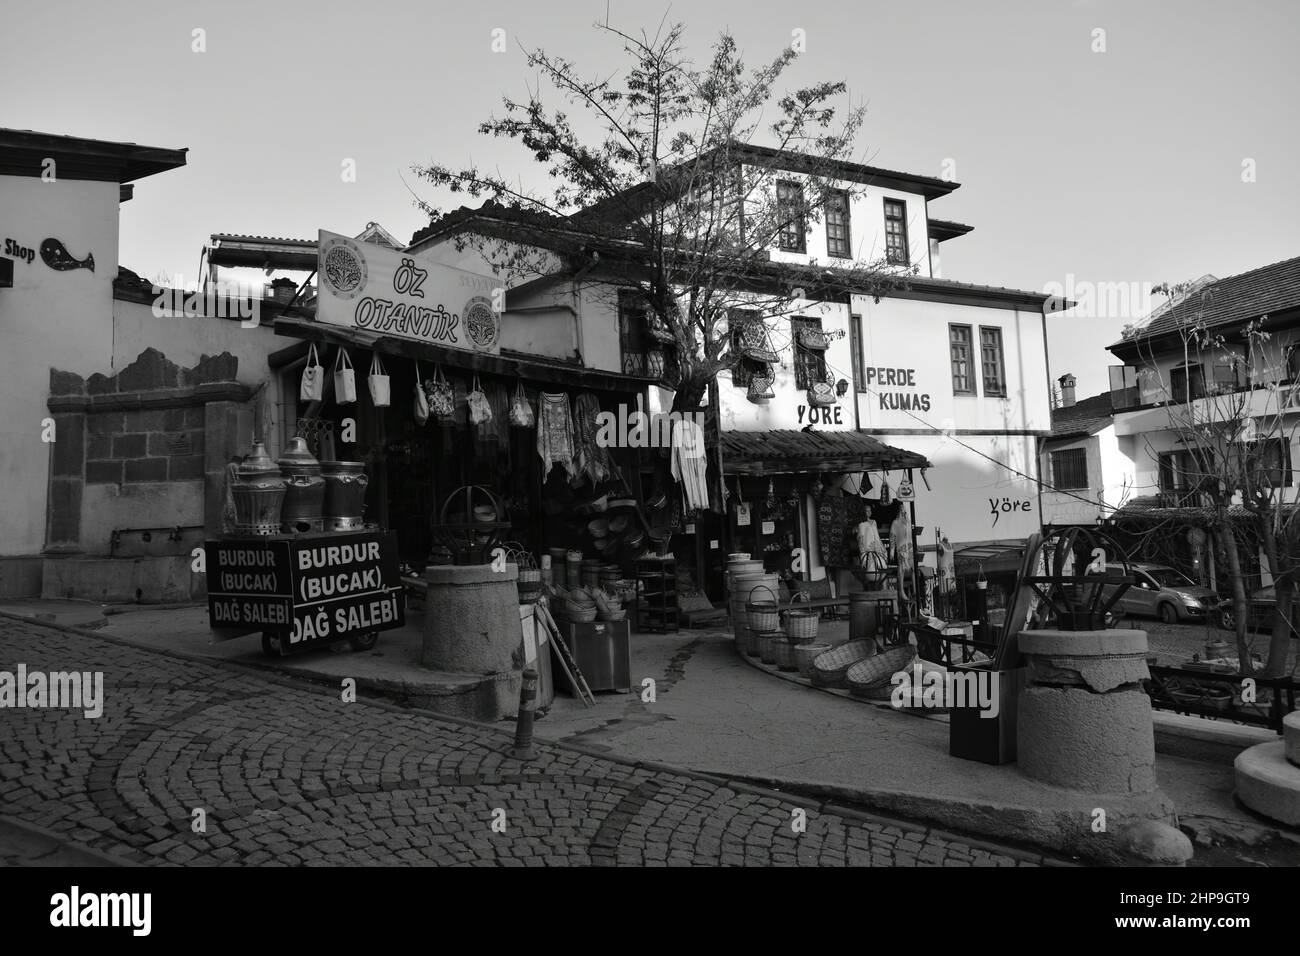 Vieille ville d'Ankara - boutiques et vie de rue dans le quartier du château de la vieille ville d'Ankara Banque D'Images